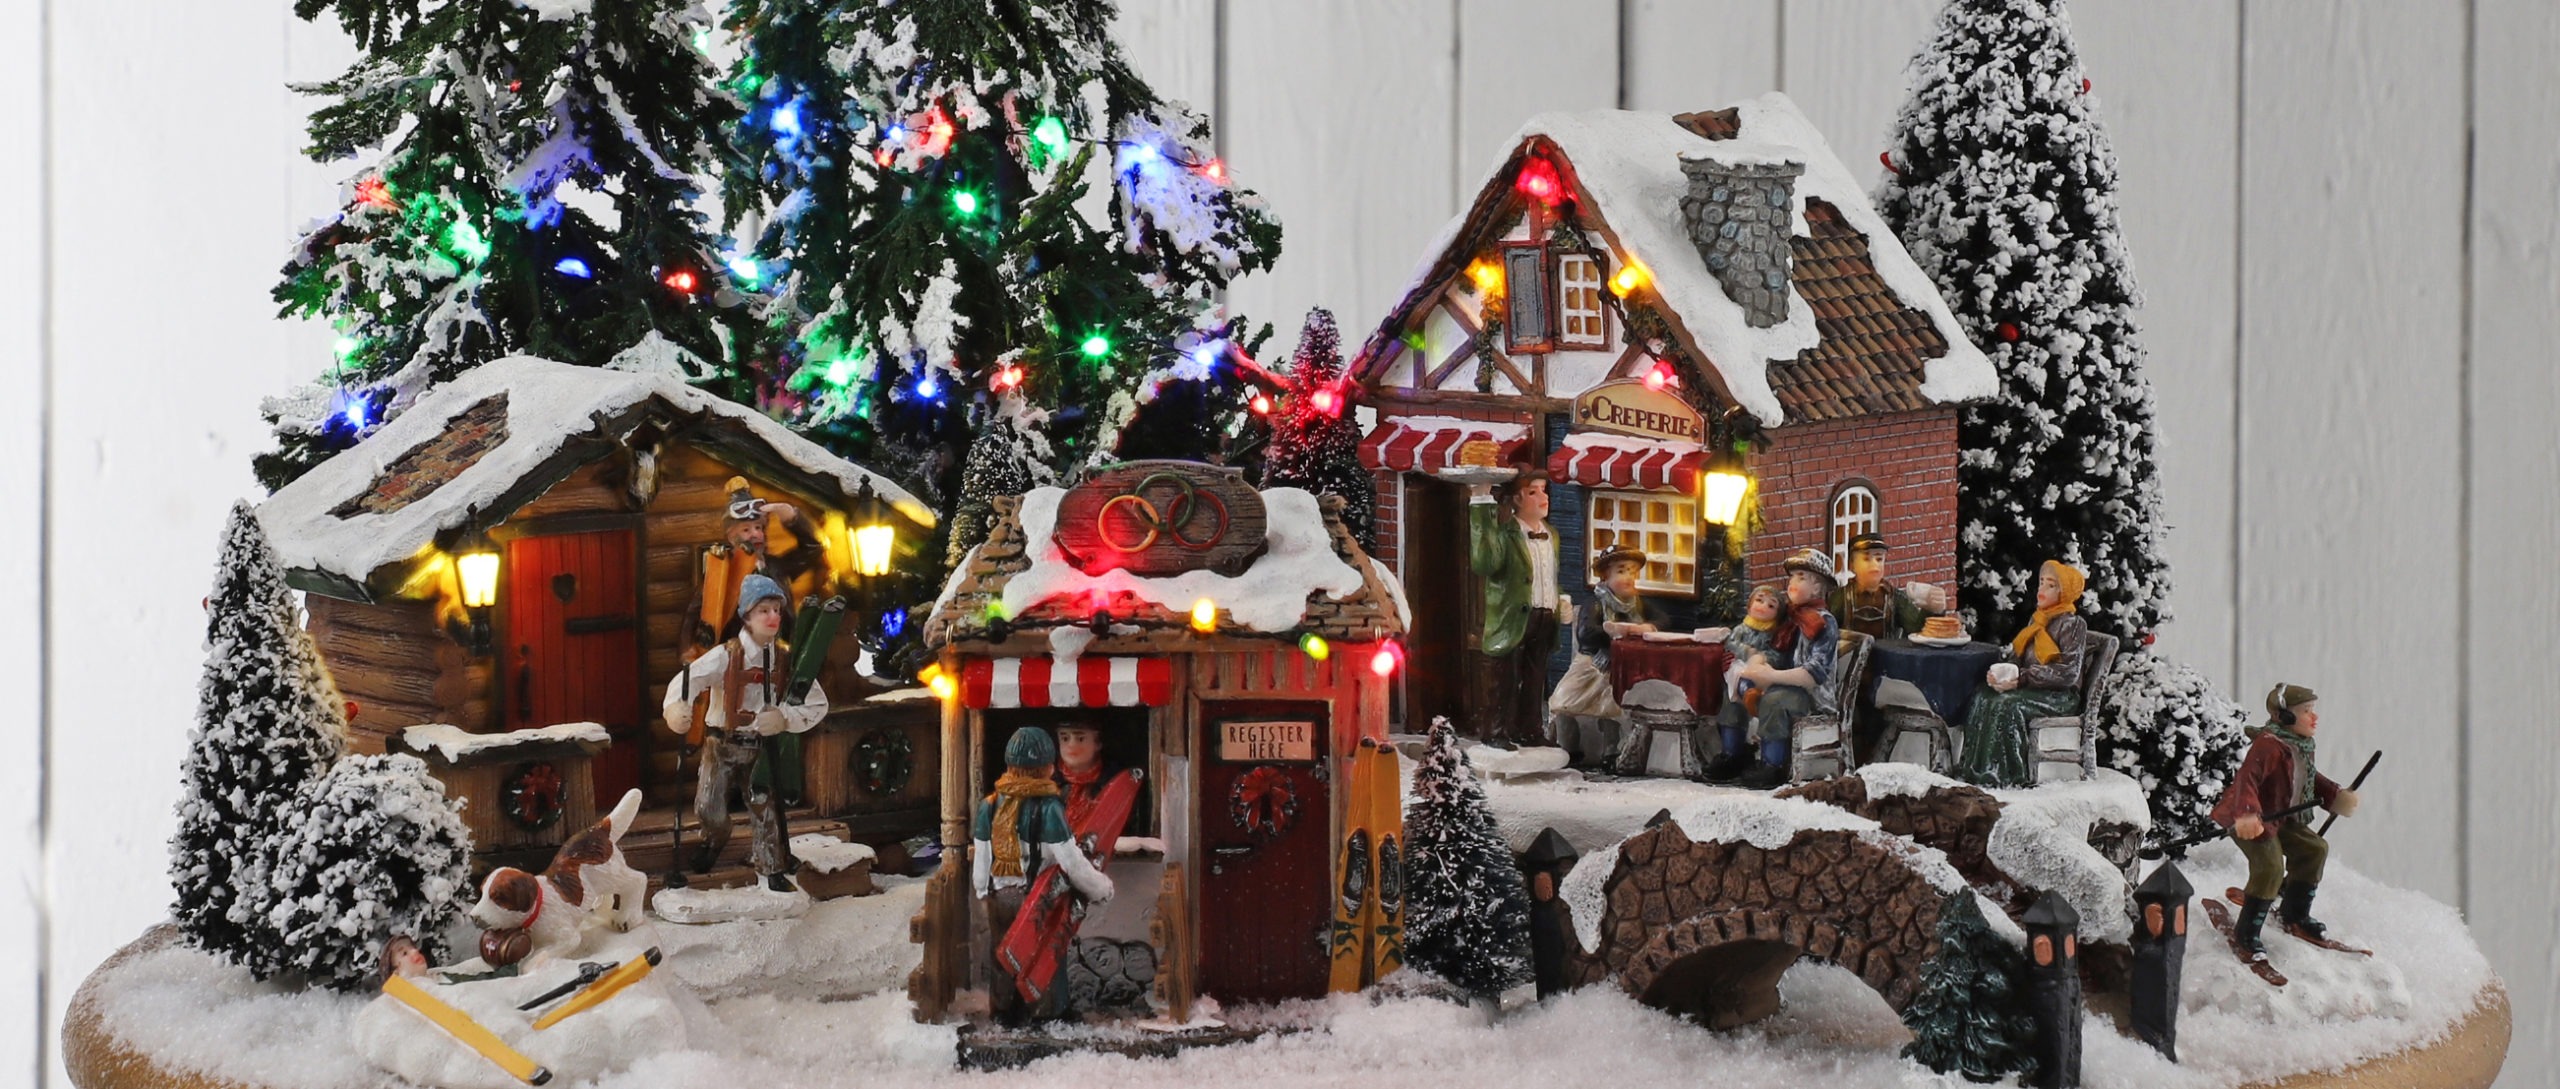 Noël : la magie des villages animés miniatures - Mon jardin d'idées